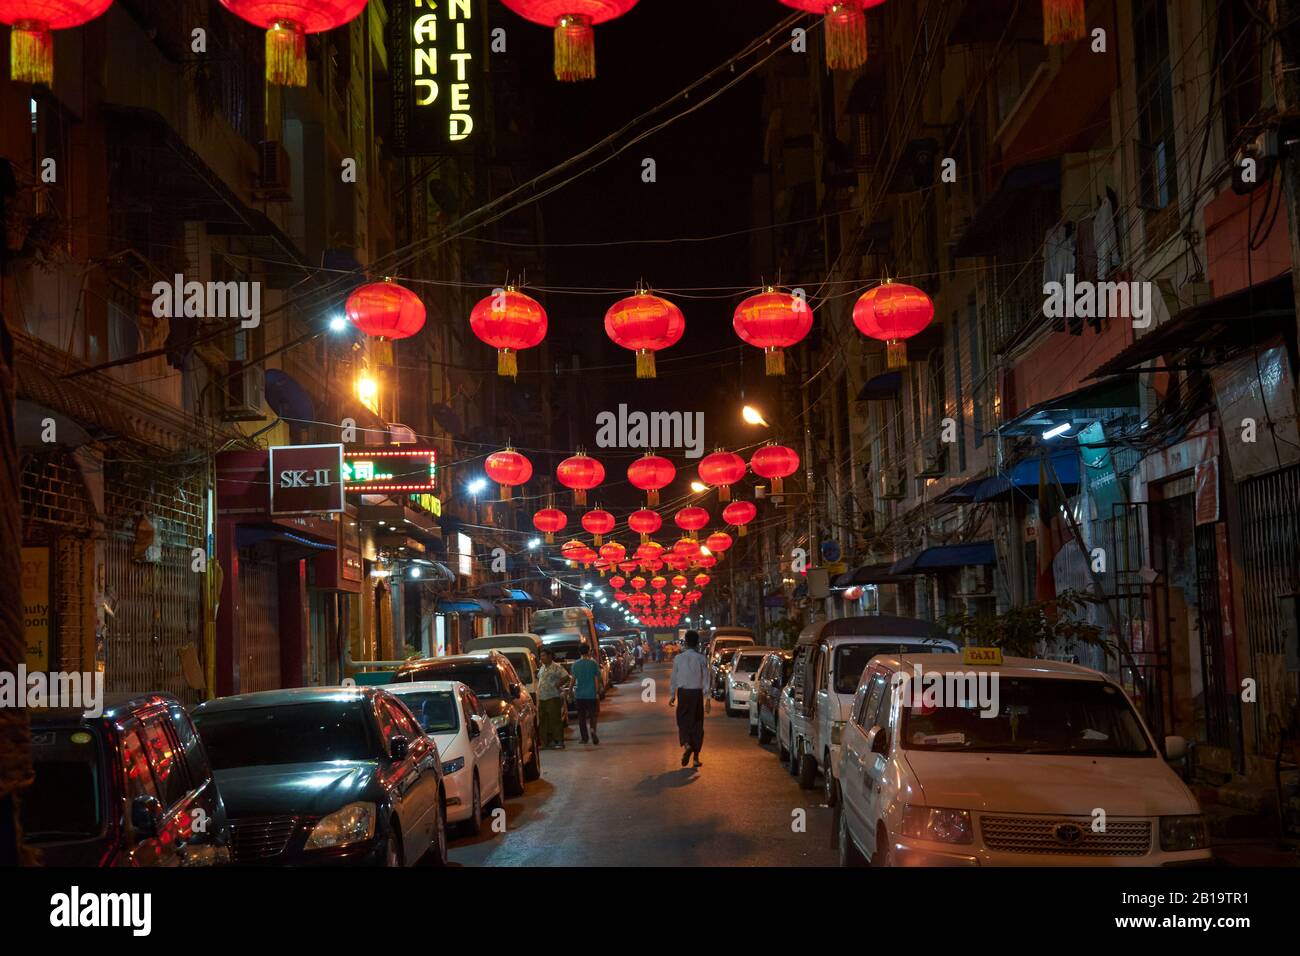 Für das chinesische Neujahrsfest mit roten Lampions geschmückte Straße, chinesisches Viertel, Yangon, Myanmar Banque D'Images